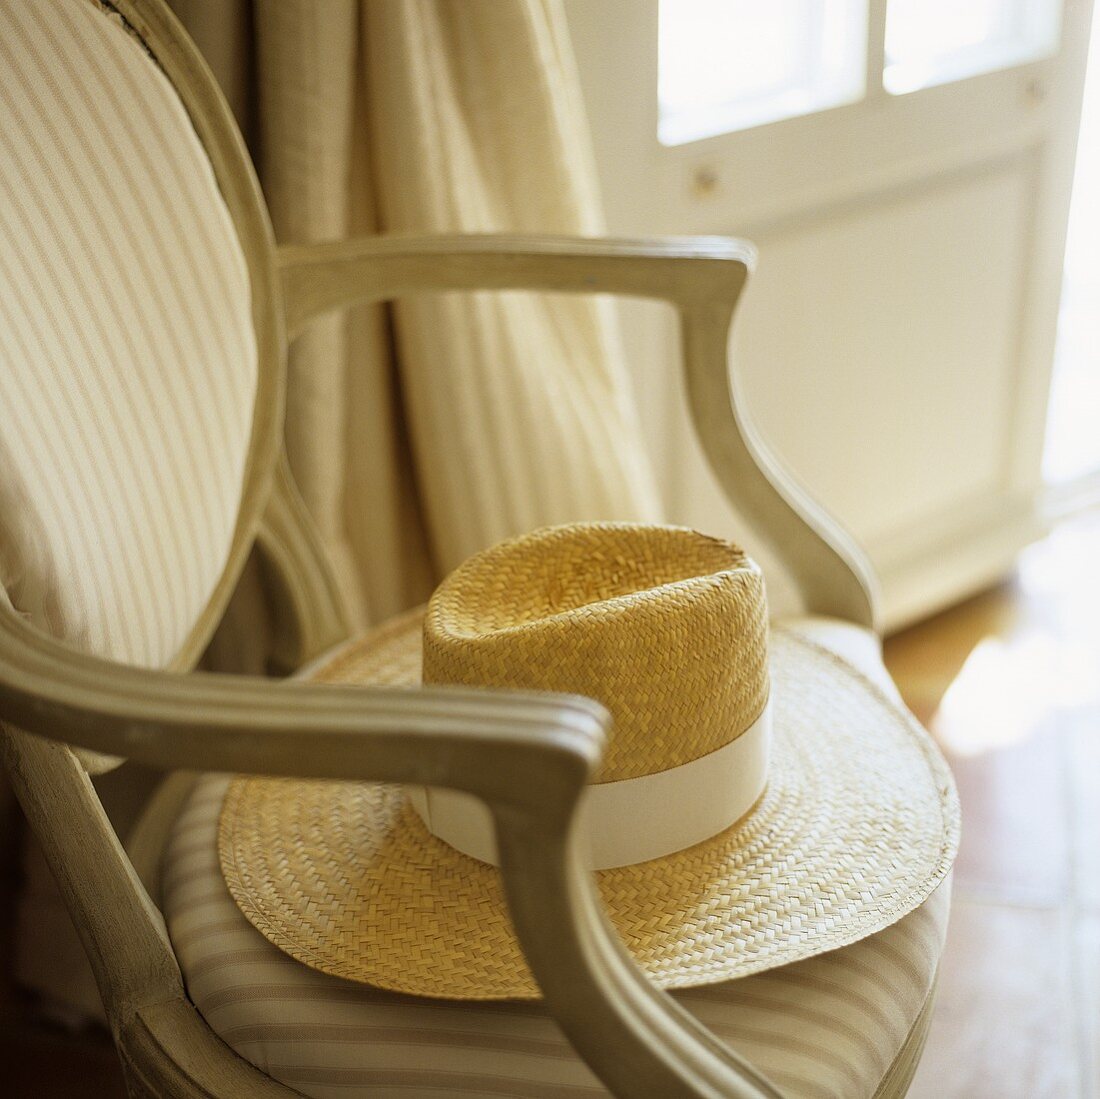 Strohhut mit weißem Band auf gepolstertem Stuhl mit gestreiftem Bezug